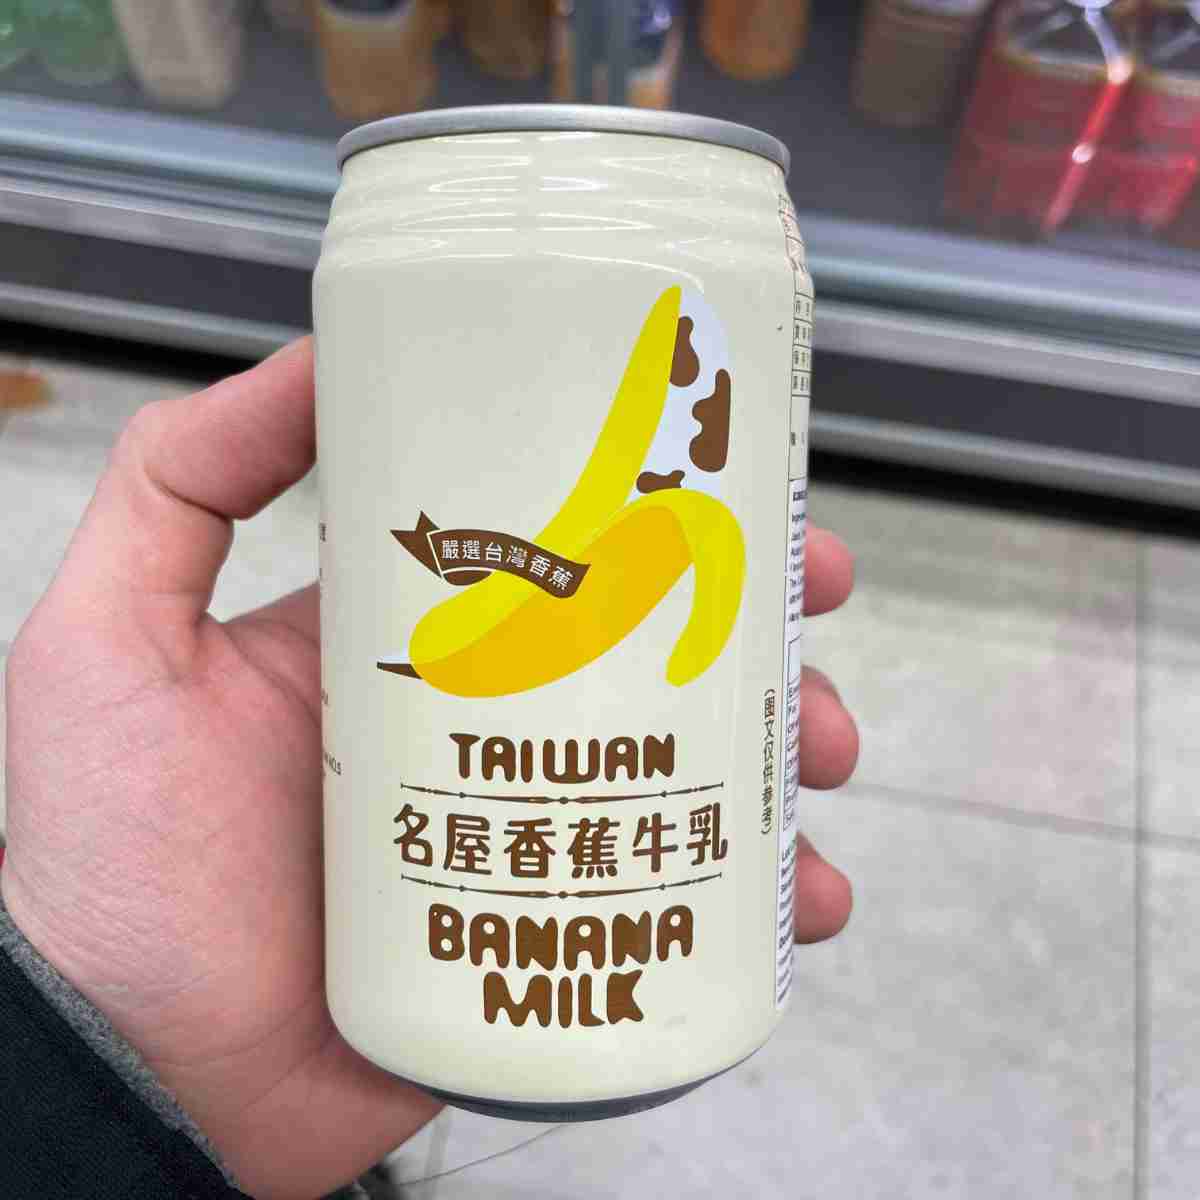 Taiwanese banana milk